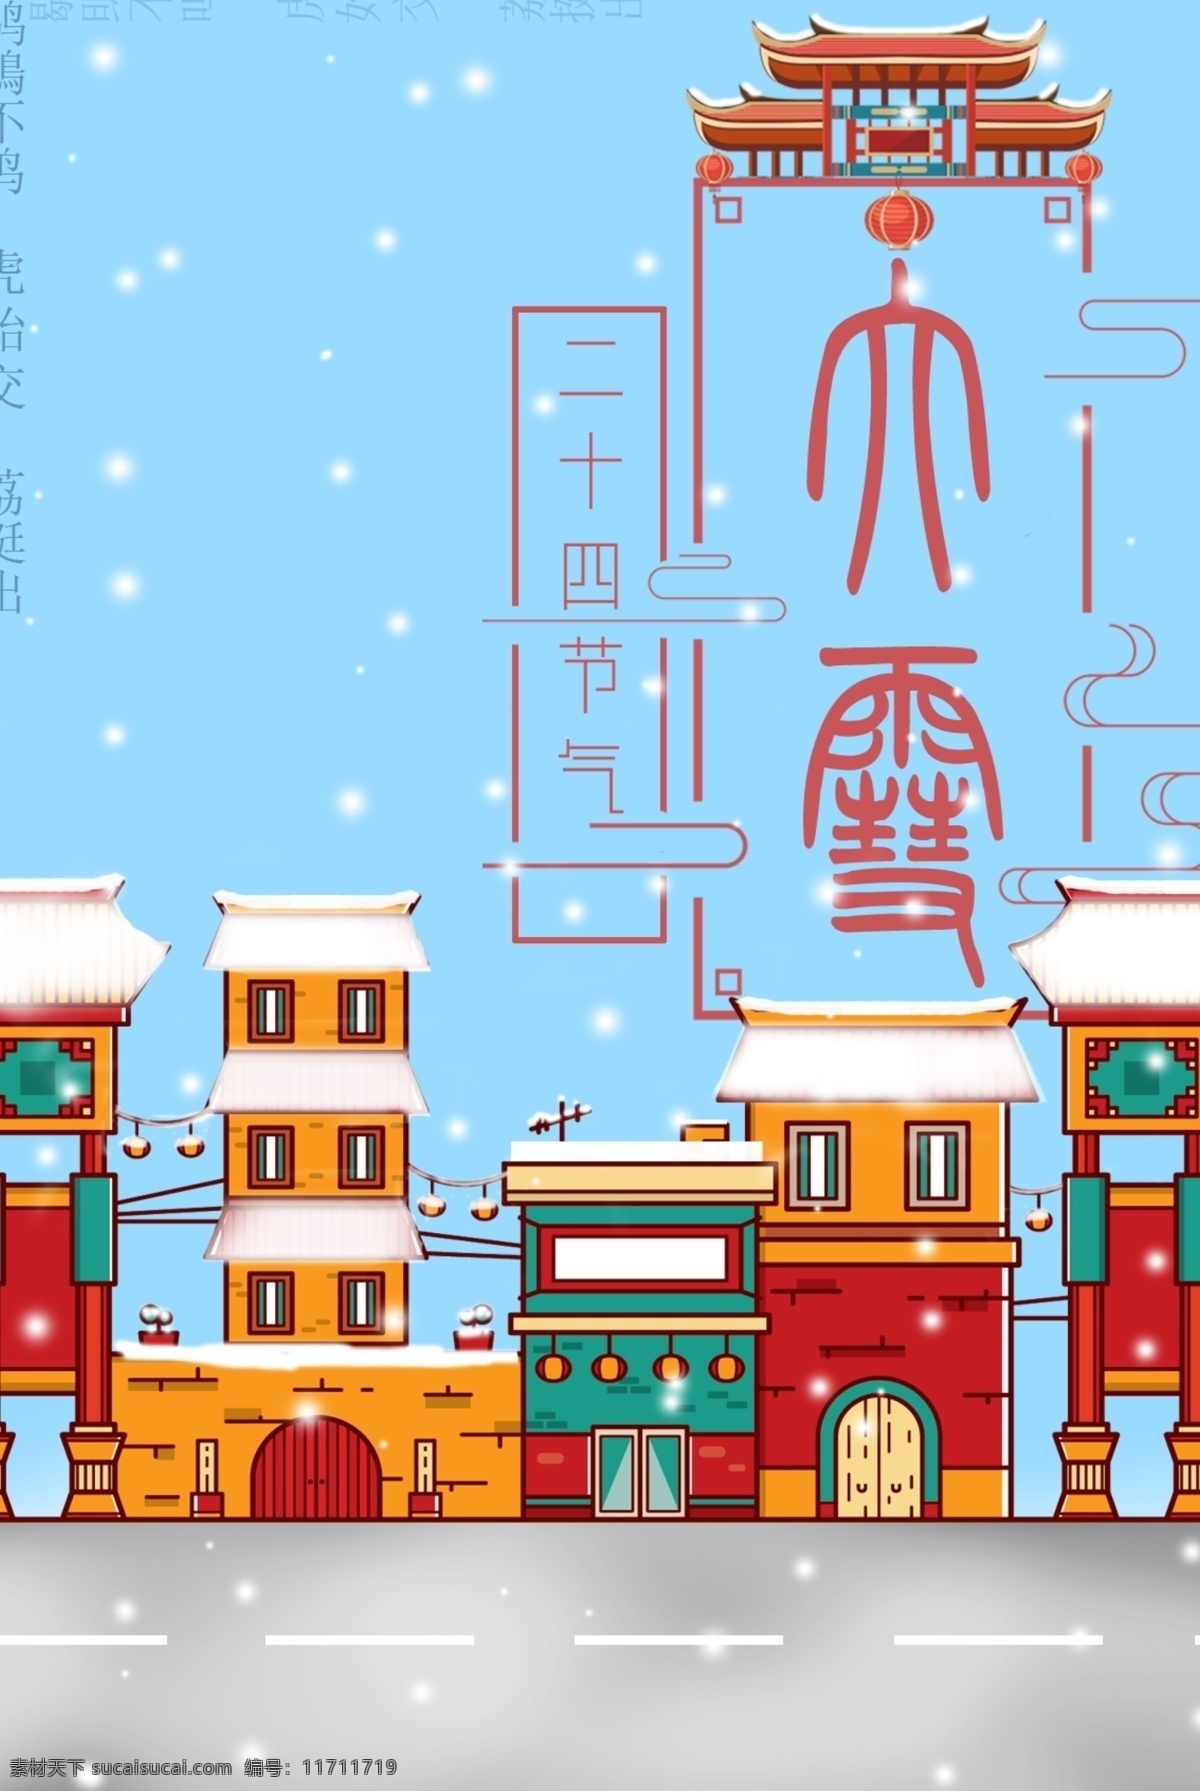 大雪 二十四节气 节日 中国风 扁平化 雪花 雪景 节日海报 节气海报